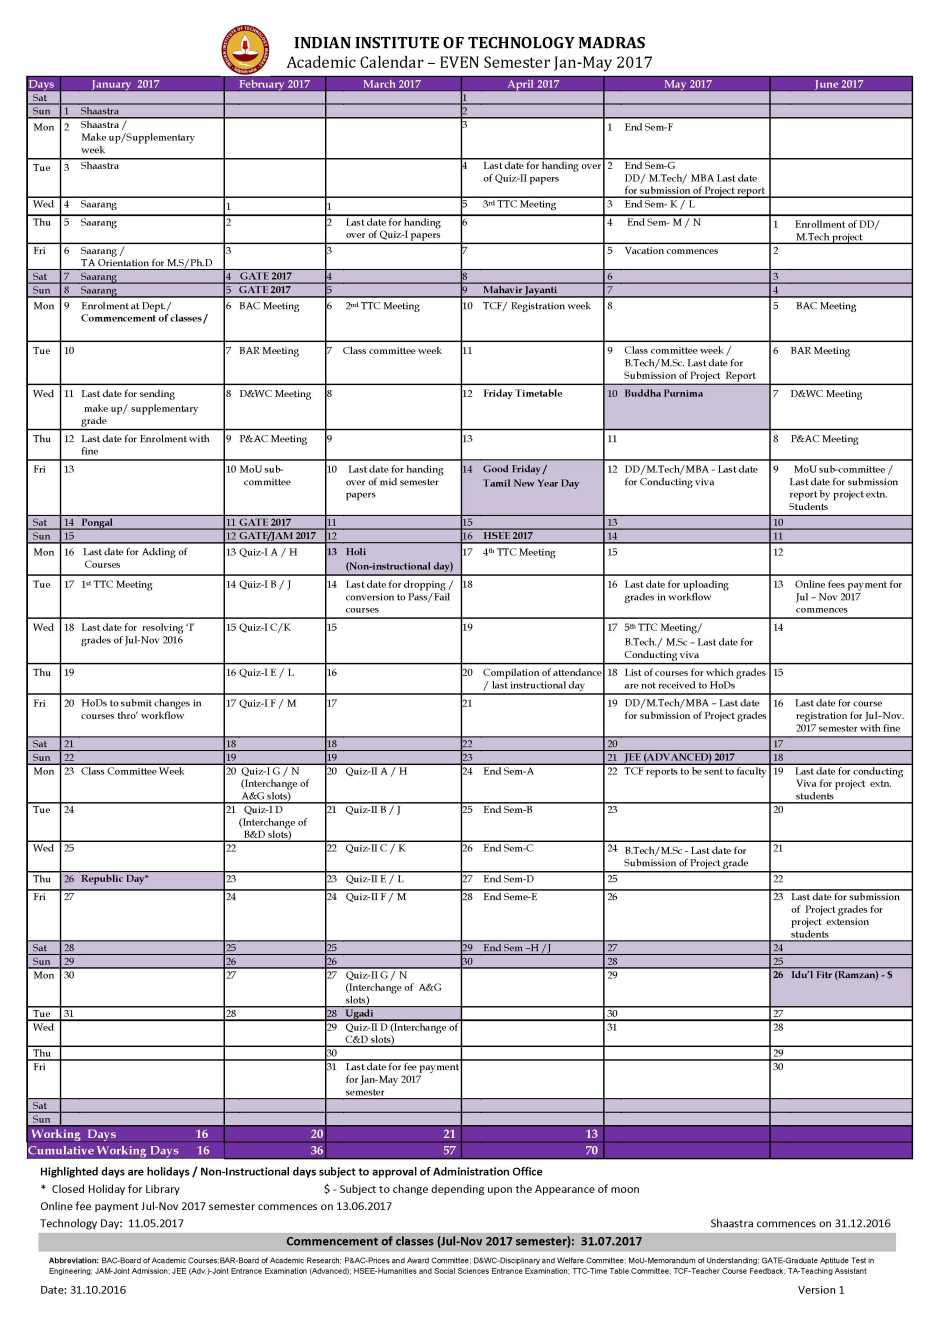 IIT Madras Academic Schedule 2 